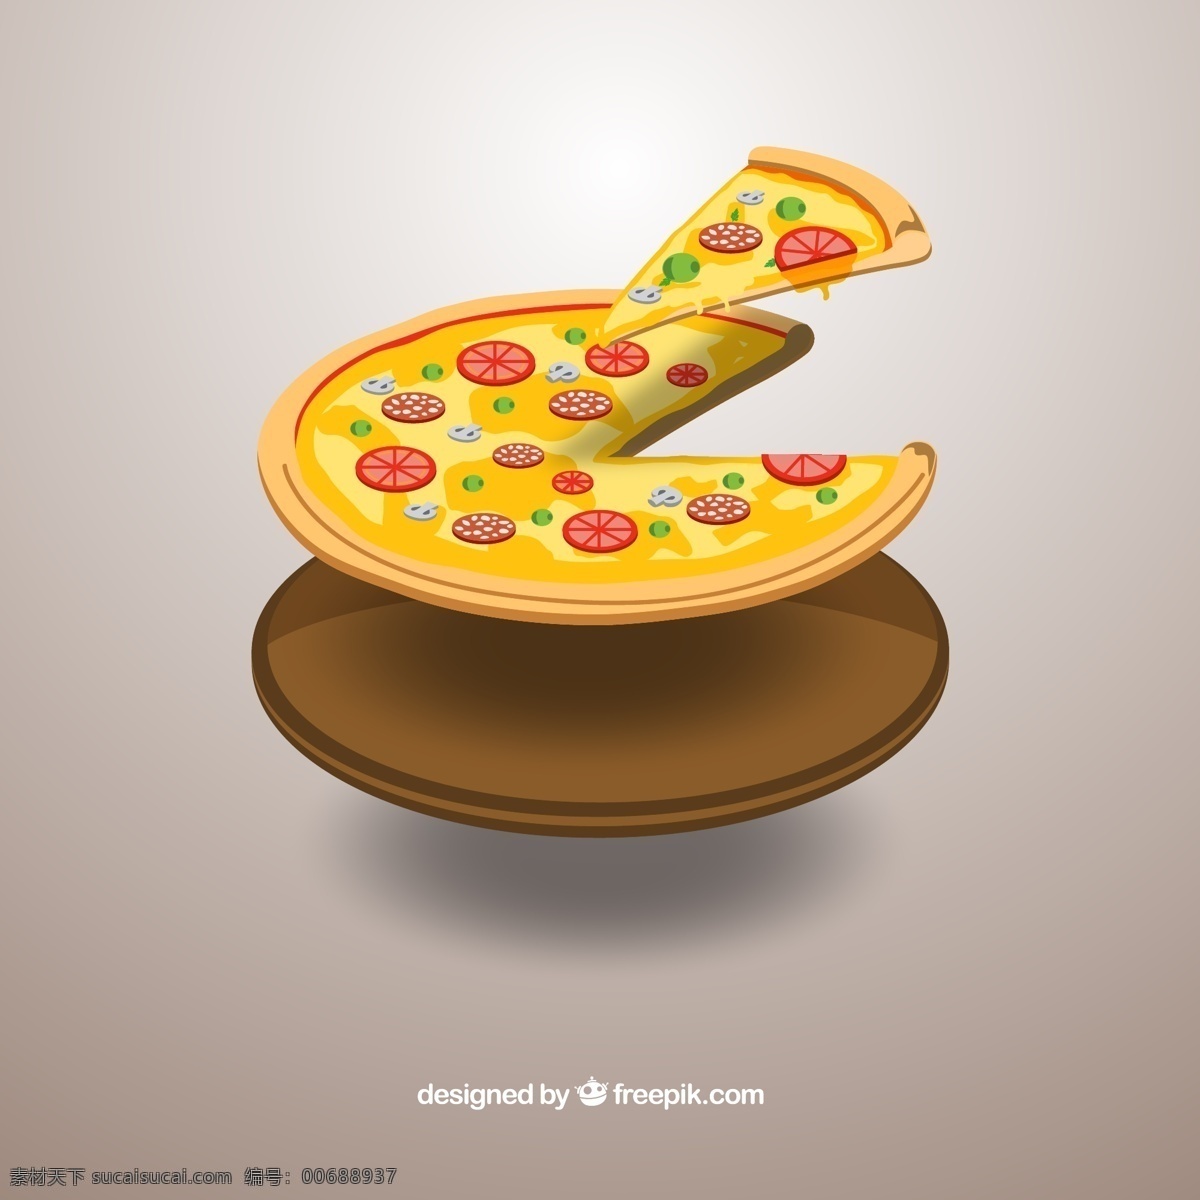 切开的美味 披萨矢量 快餐食品 食物 披萨 三角披萨 矢量图 ai格式 生活百科 餐饮美食 灰色